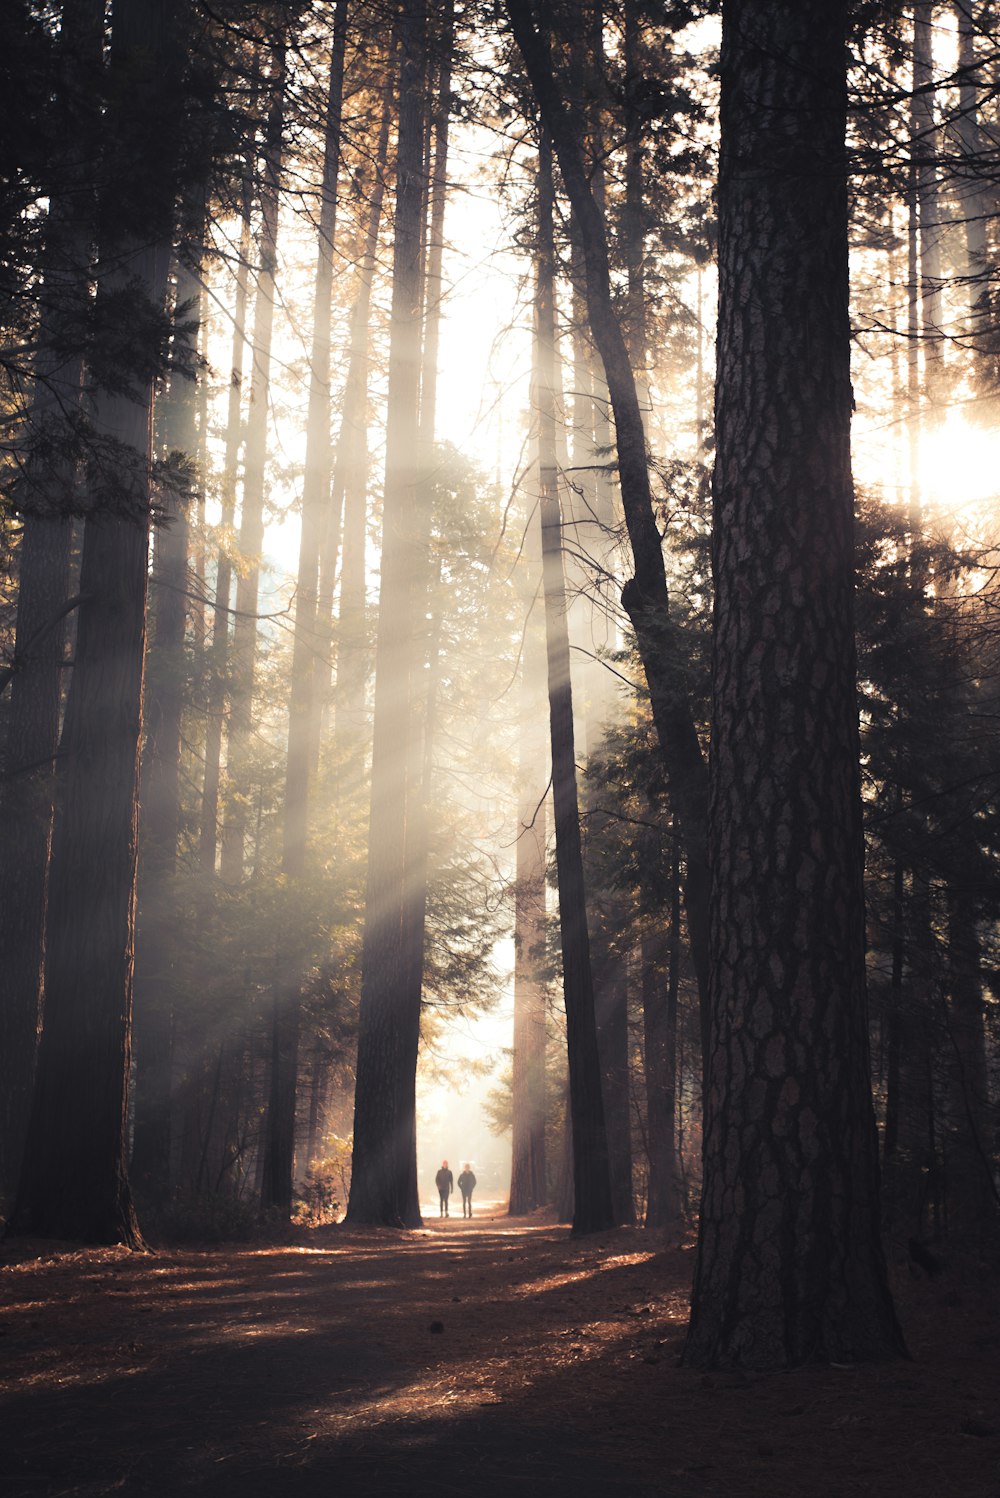 deux personnes marchant au milieu de grands arbres